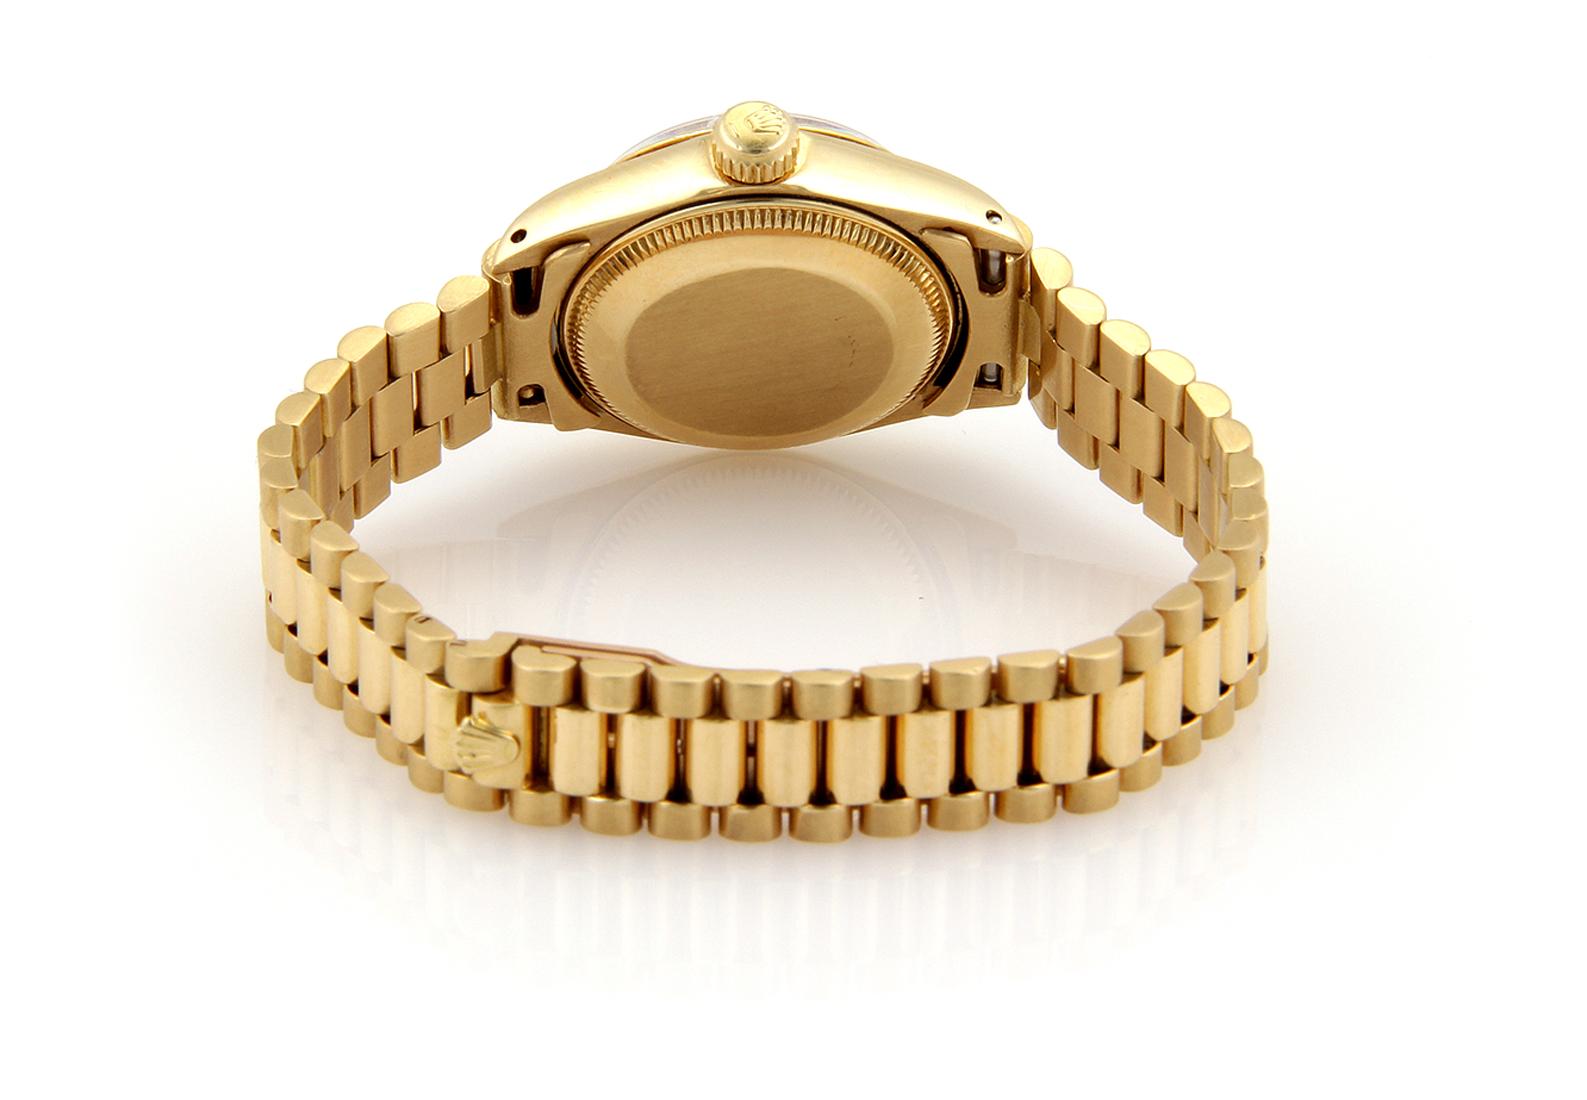 Cette magnifique montre-bracelet authentique de Rolex a été réalisée en or jaune 18 carats avec une finition polie. Le cadran et le boîtier sont ronds et le bracelet jubilé est attaché au boîtier. Cadran noir, index et aiguilles dorés. La date est